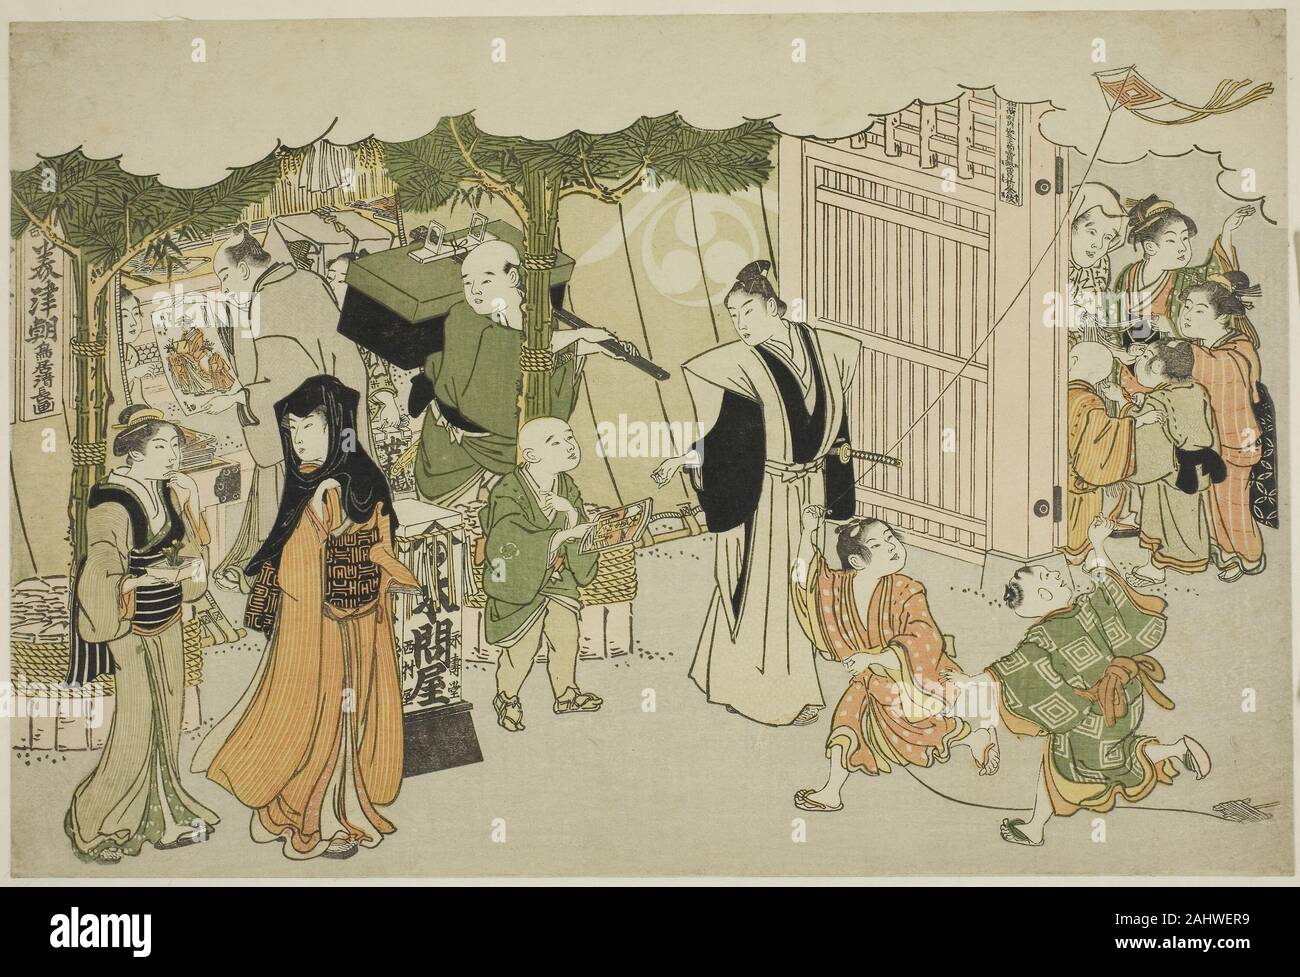 Япония раннего нового времени. Эпоха Нара в Японии. Период Нара в Японии. Японская живопись периода Нара. Древняя Япония эпоха Нара.